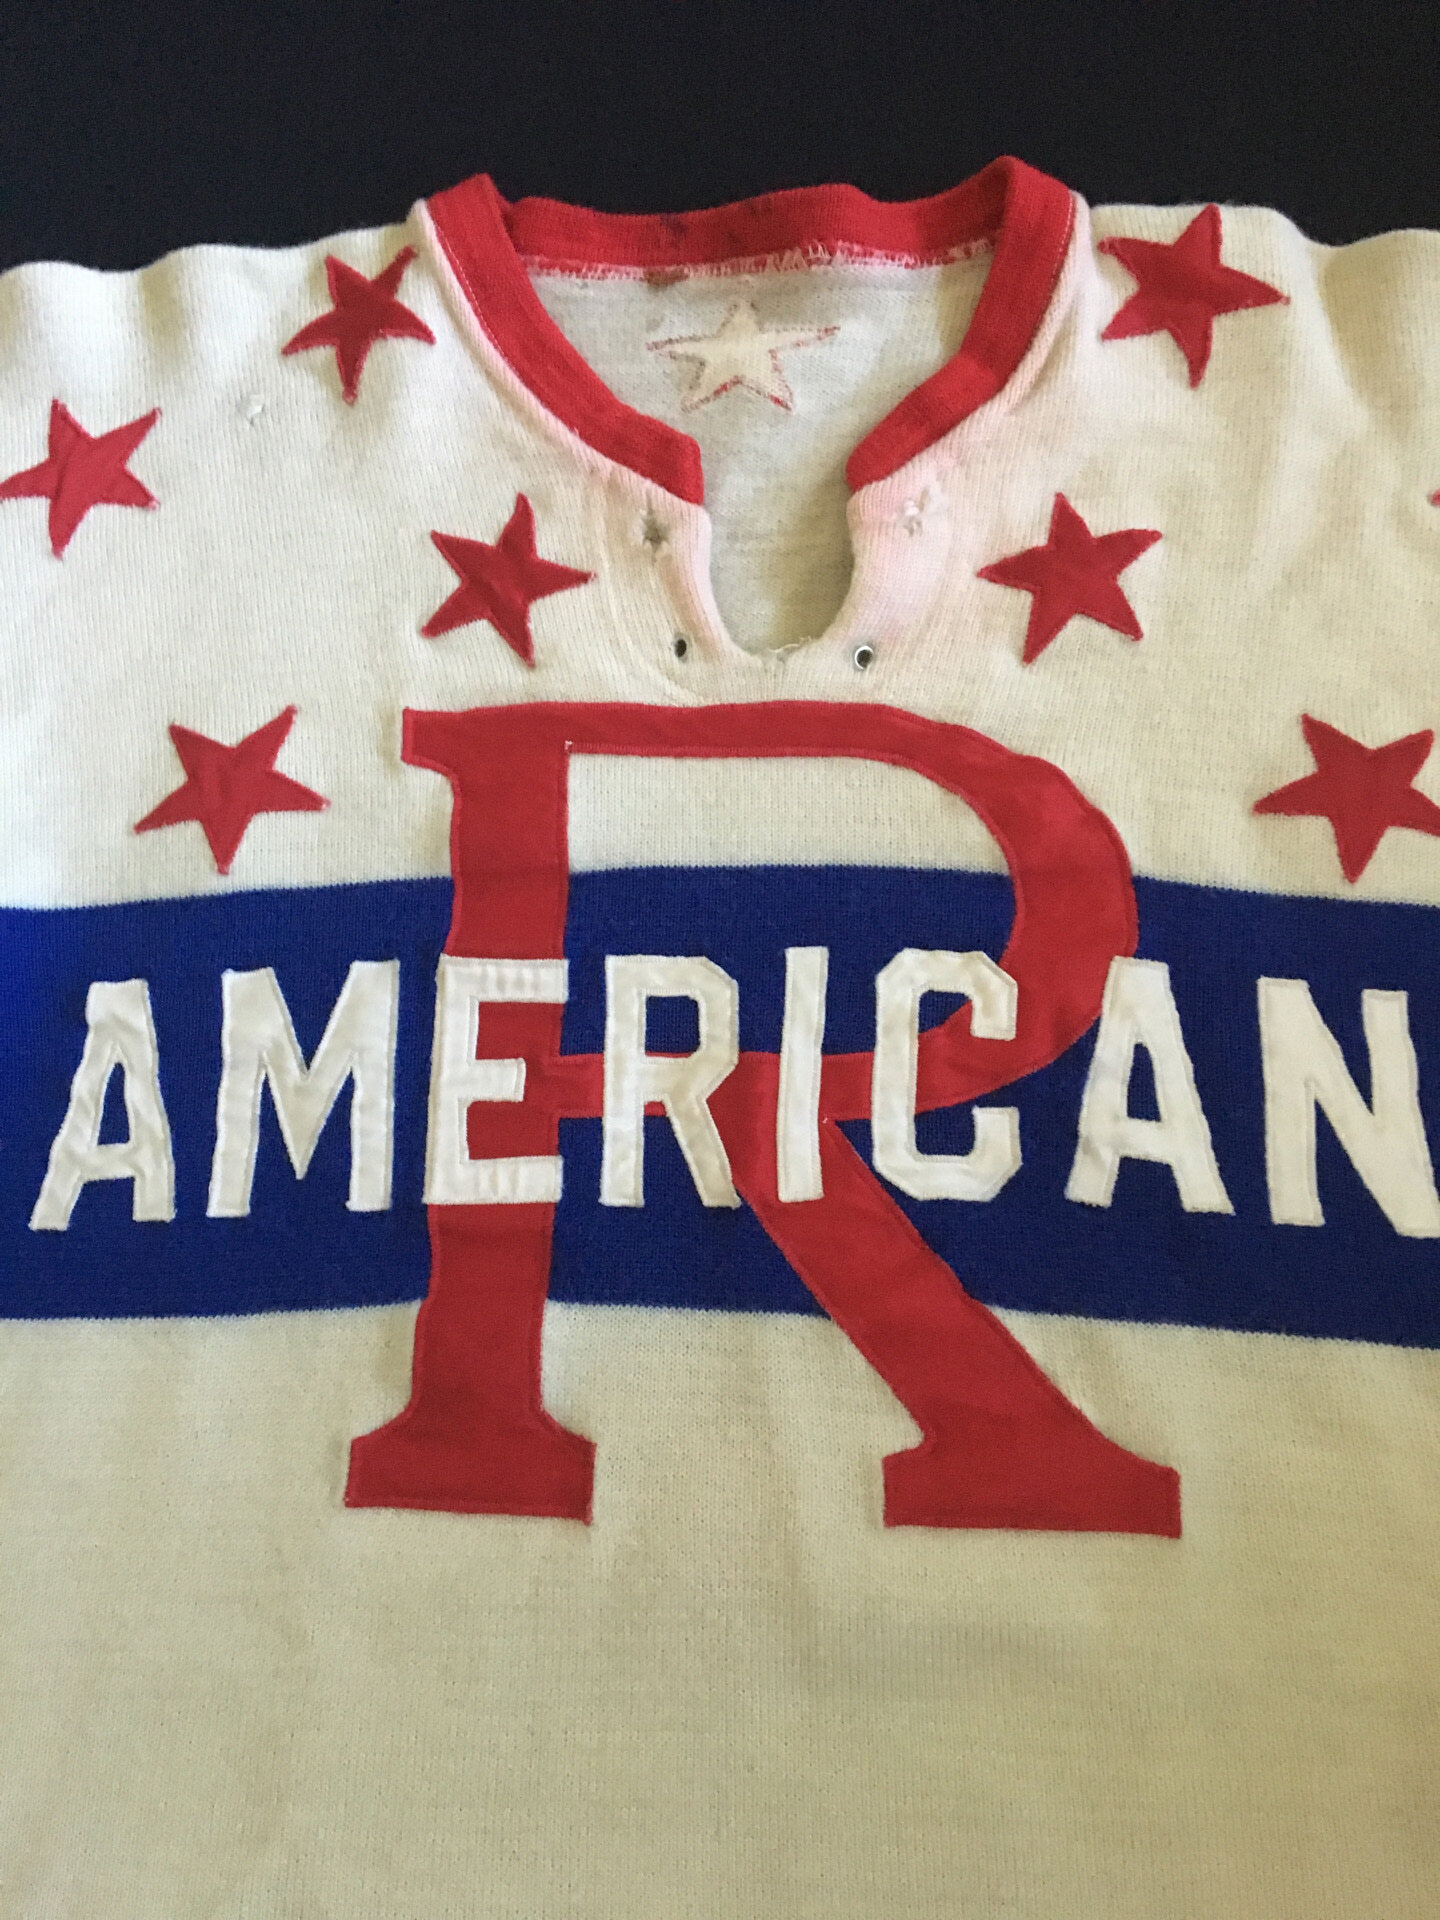 Rochester Americans Minor League Hockey Fan Jerseys for sale